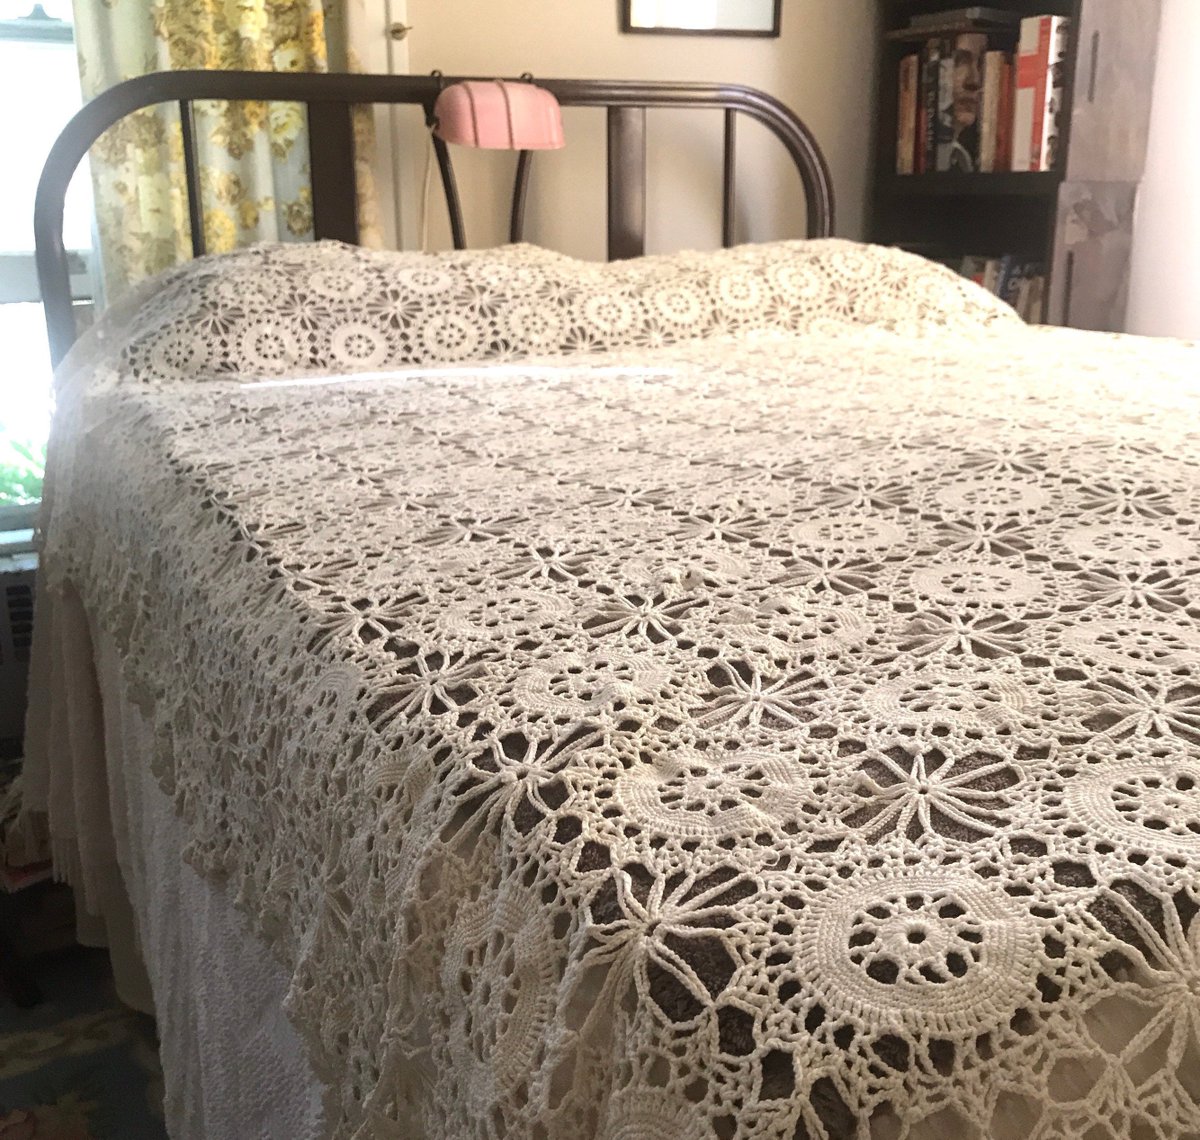 Merrilyverilyvintage On Twitter Vintage Crochet Bed Coverlet